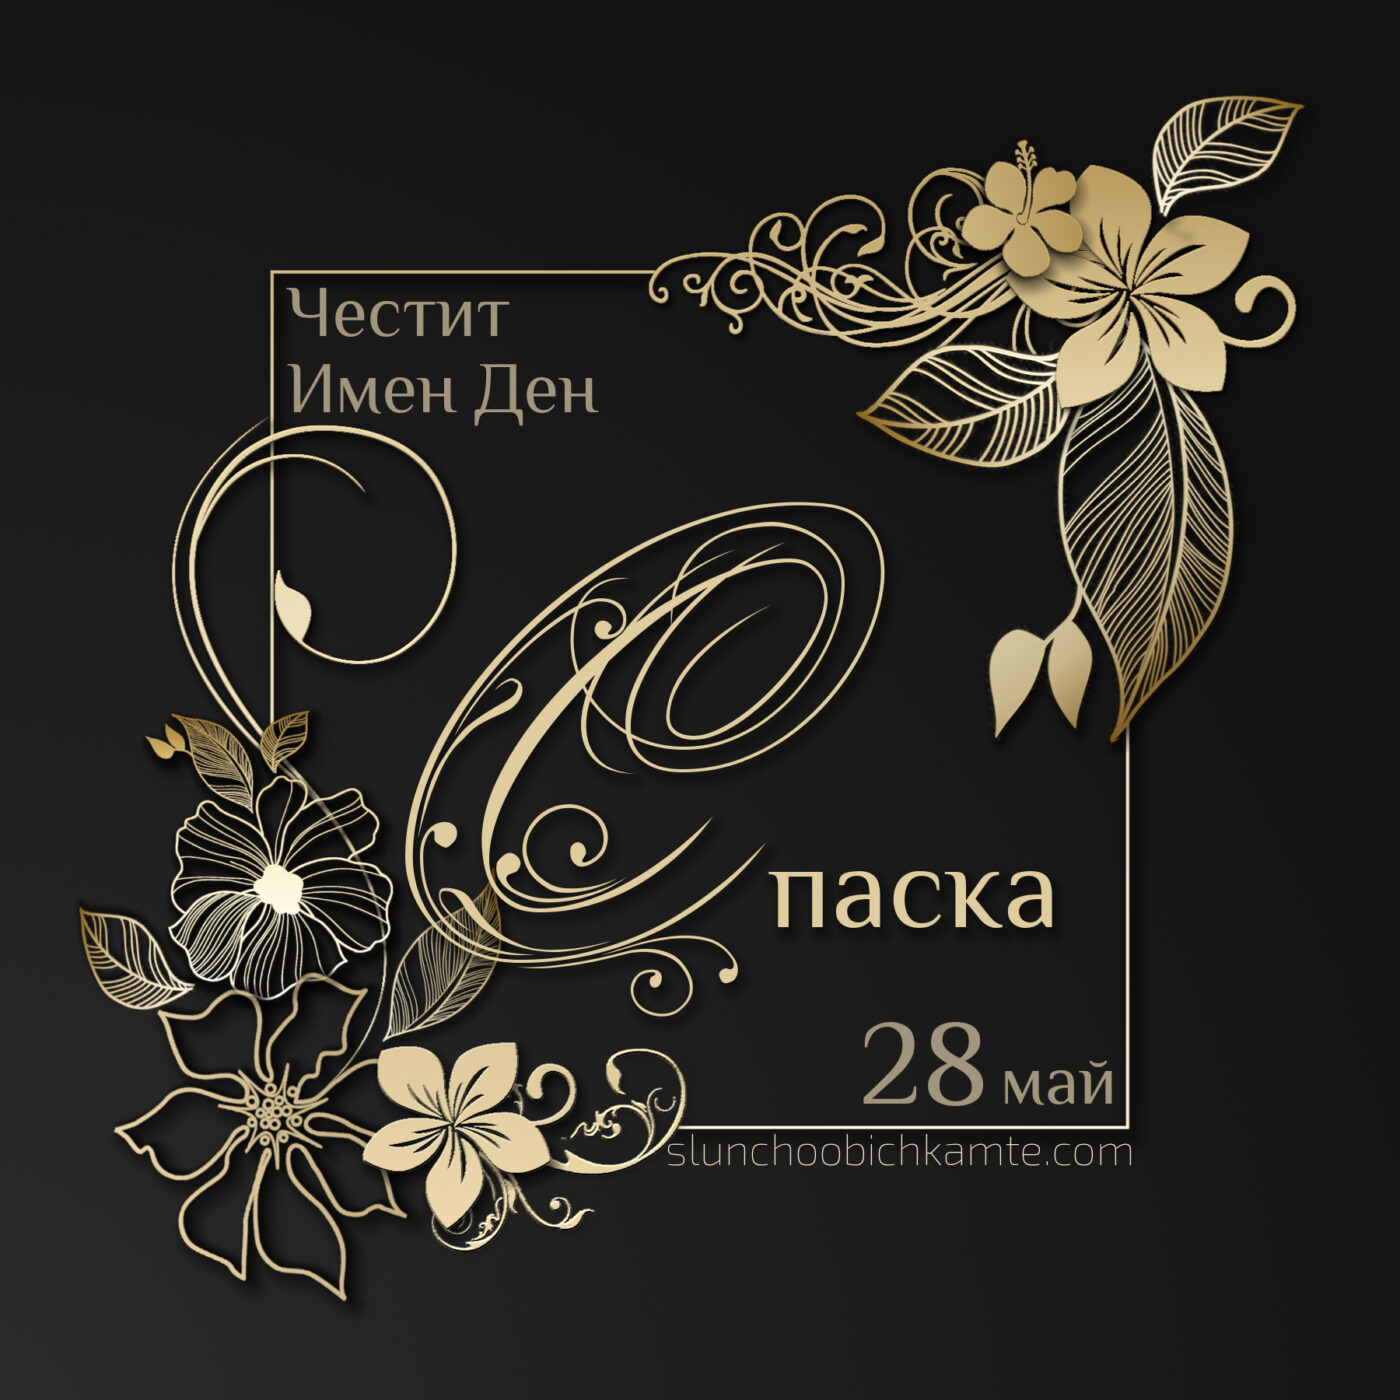 Честит имен ден Спаска - 28 май - Картички за Имен ден, пожелания за имен ден - Пожелай честит имен ден с оригинална картичка